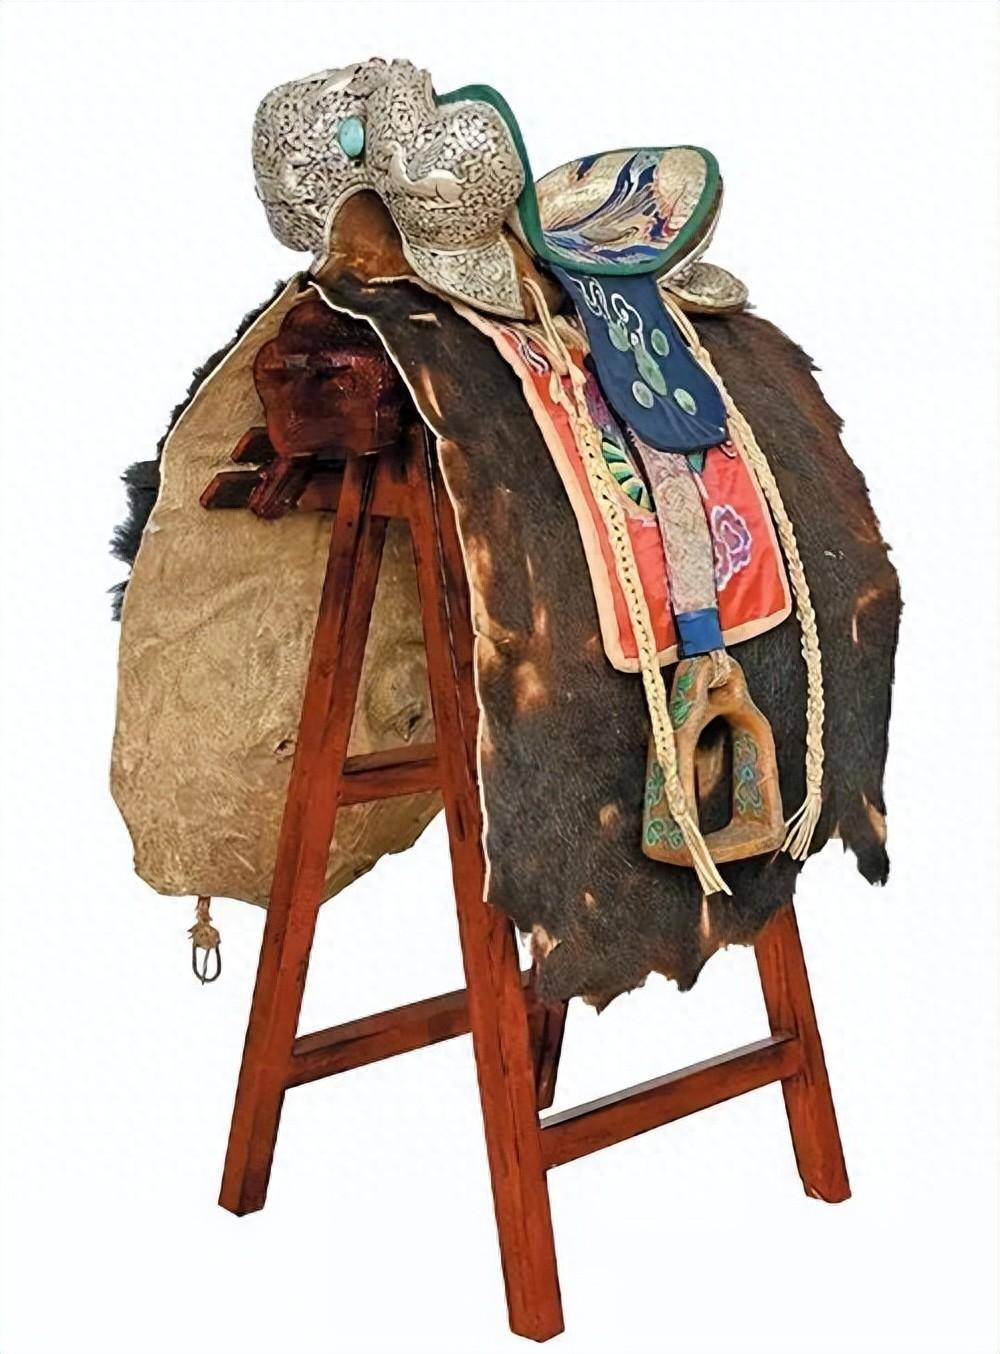 皮革工艺笼头 马鞍 马鞭 绳索等的制造马鞍用柳木 榆木等打造而成刺绣